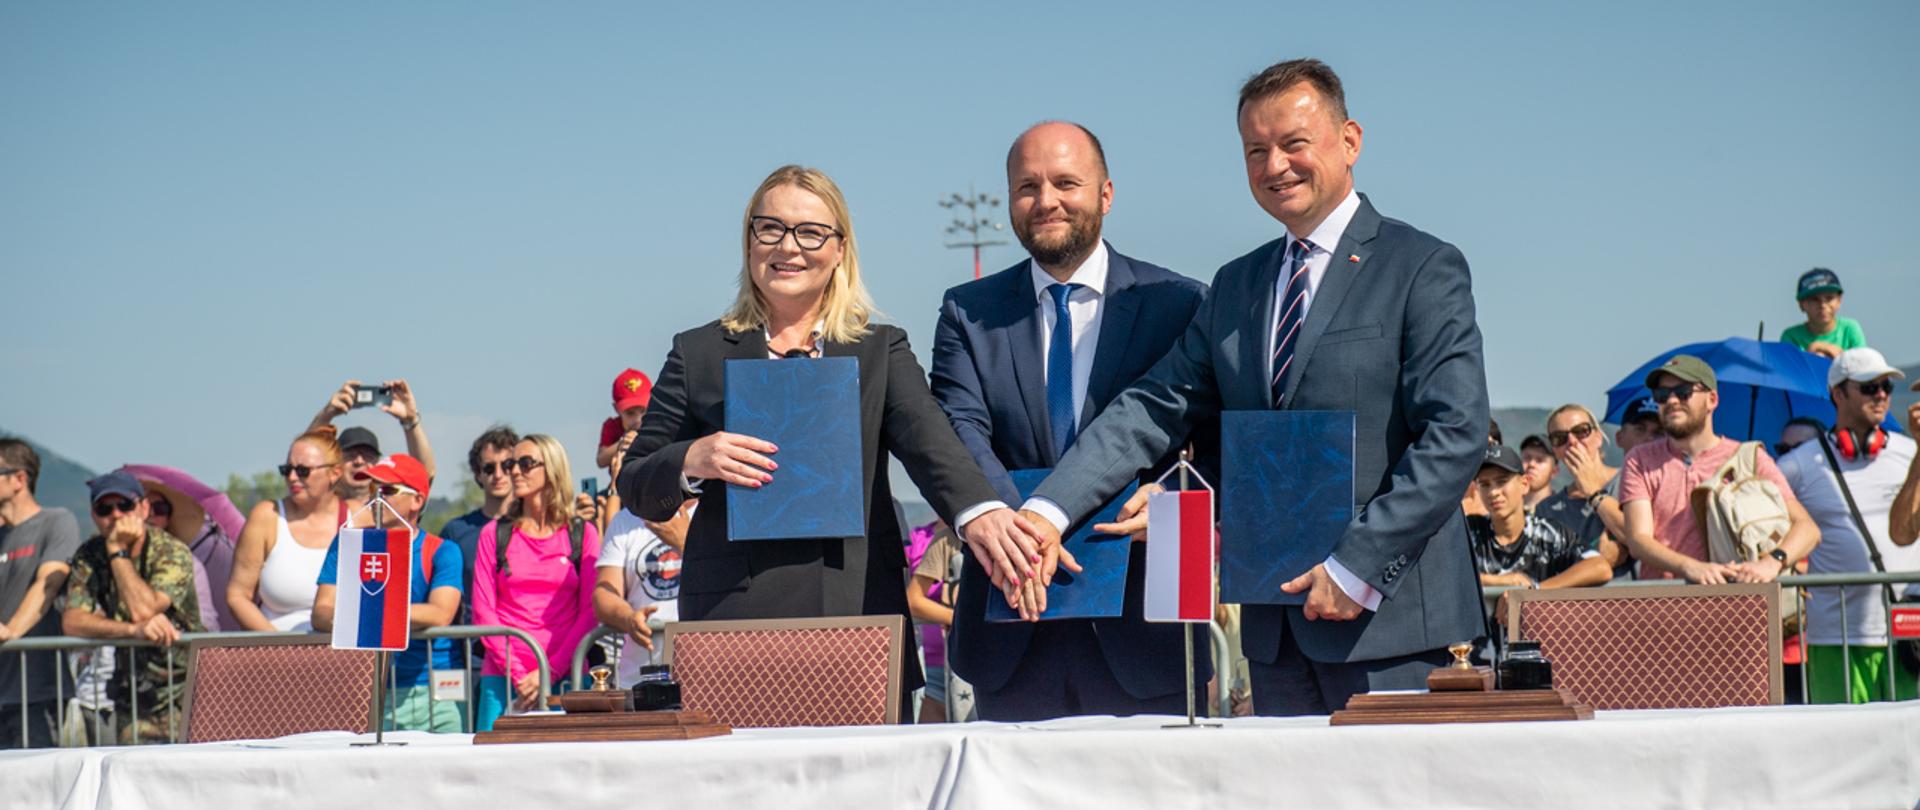 W sobotę, 27 sierpnia w bazie lotniczej Kuchyňa w Malacky Mariusz Błaszczak, wicepremier-minister obrony narodowej podpisał trójstronną deklarację z ministrami Czech i Słowacji w sprawie wzajemnego zobowiązania do ochrony przestrzeni powietrznej Republiki Słowacji.